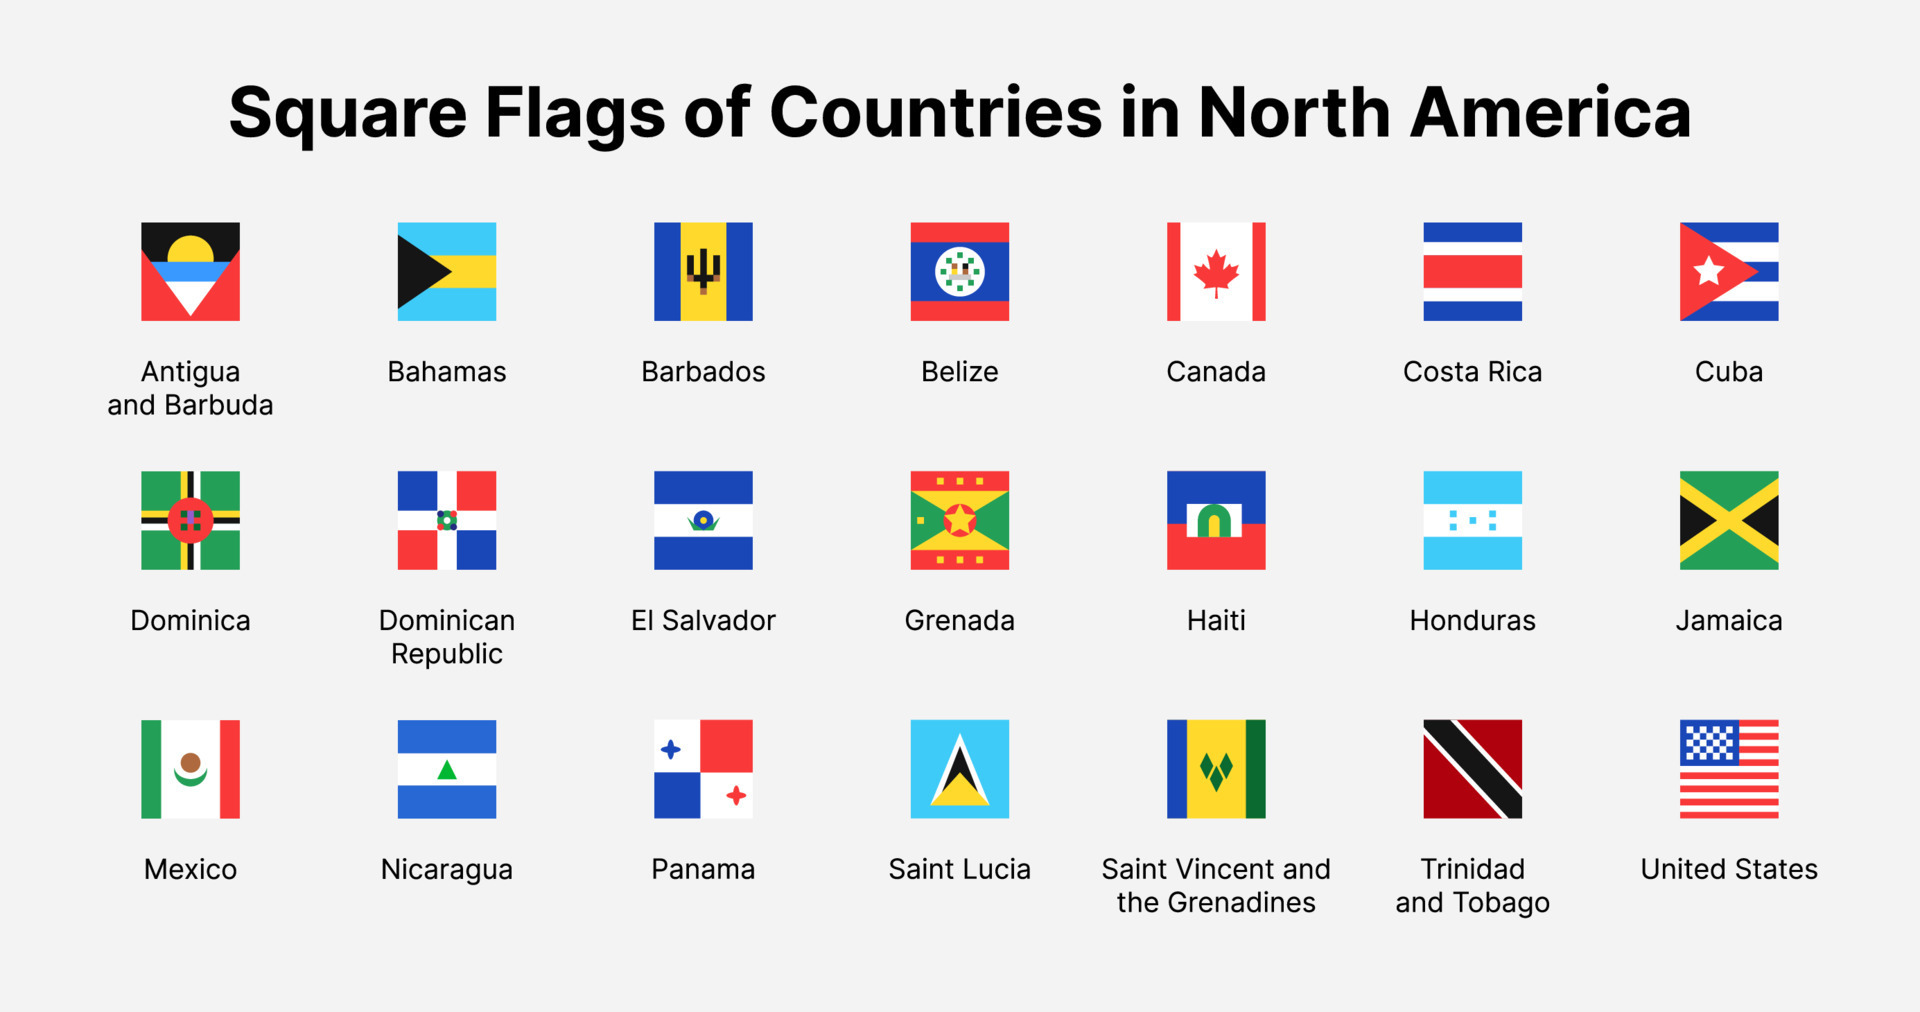 Bandeiras da América do Norte e do Sul